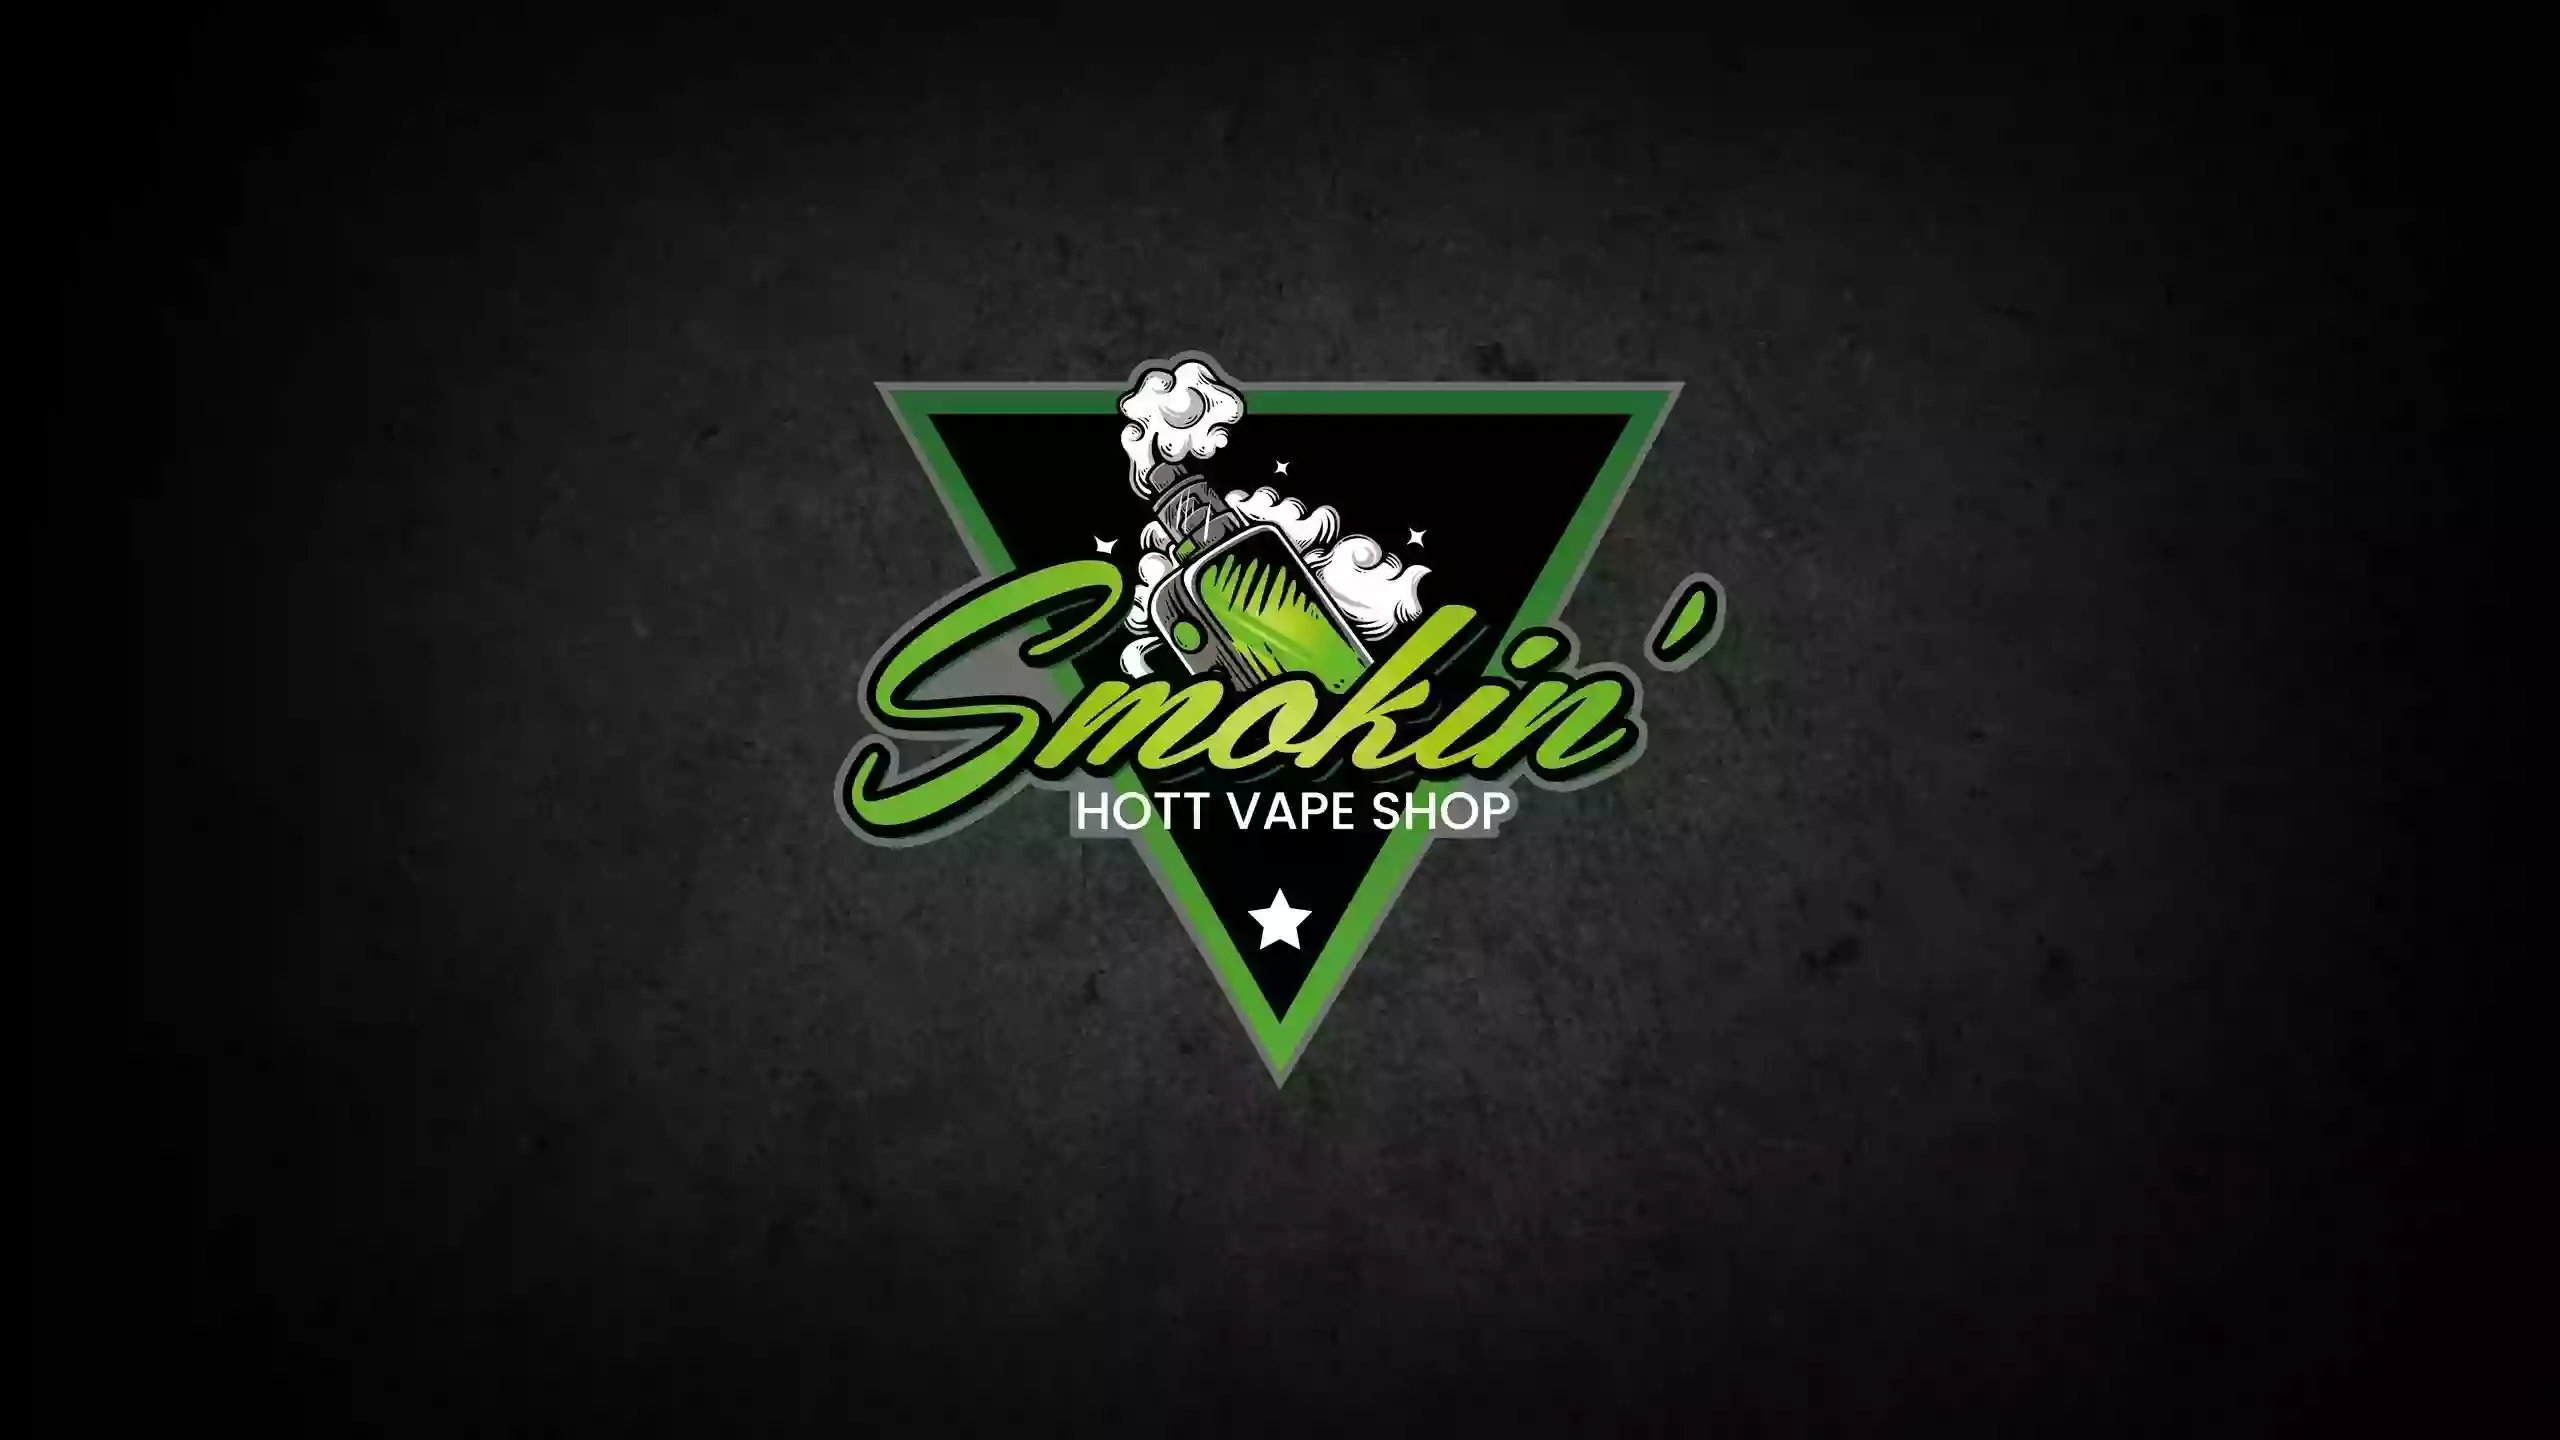 Smokin’ Hott Vape Shop